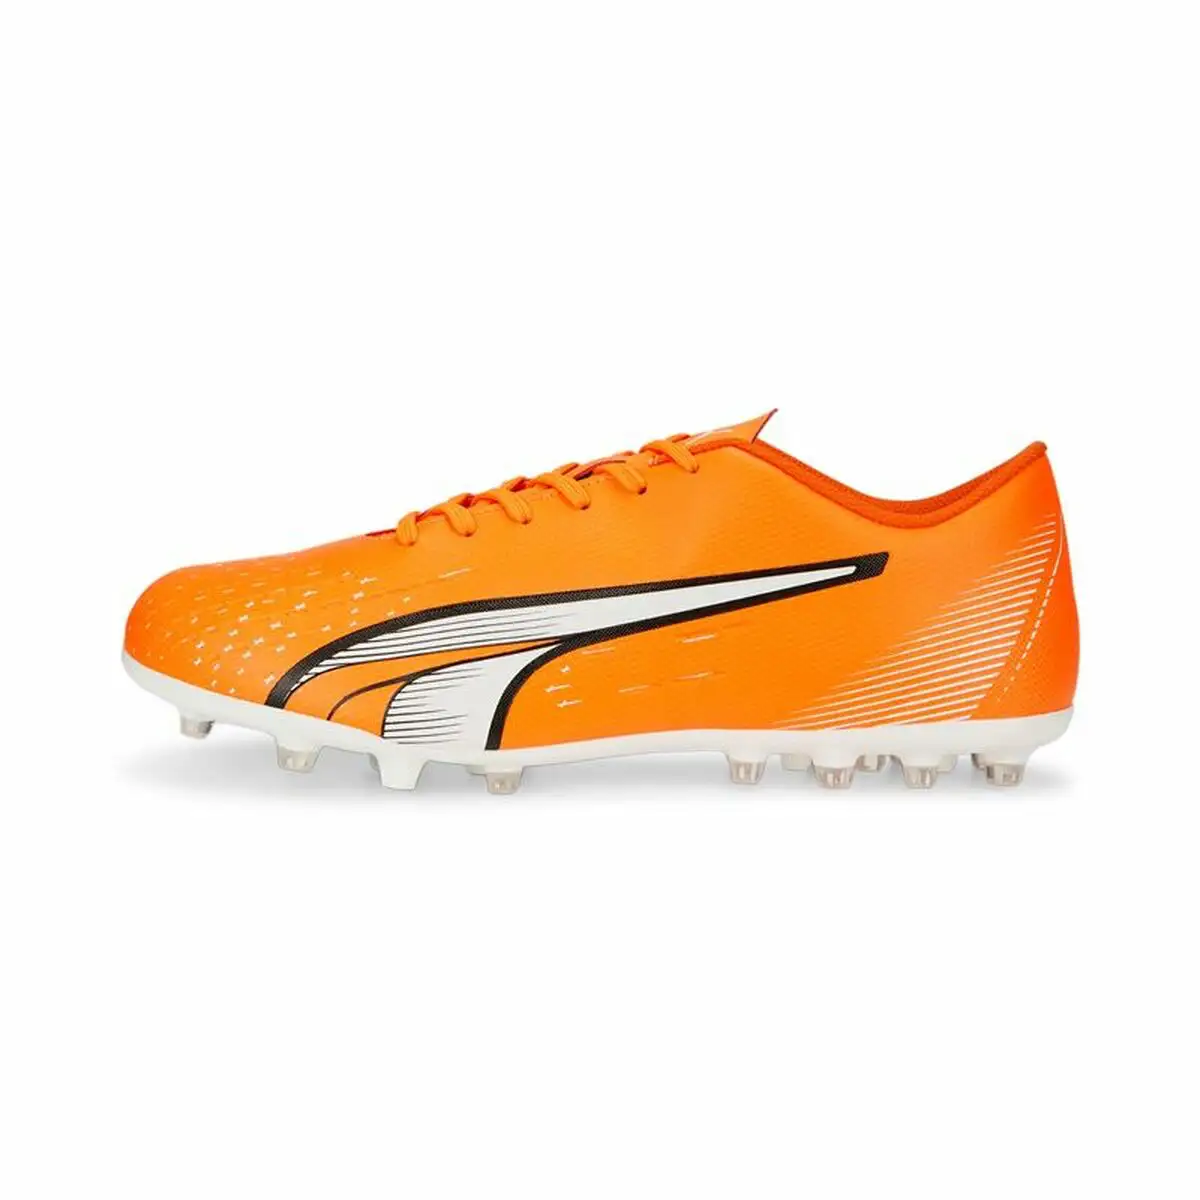 Chaussures de football pour adultes puma ultra play mg orange unisexe_7387. DIAYTAR SENEGAL - Votre Passage vers l'Exceptionnel. Naviguez à travers notre sélection minutieuse et découvrez des articles qui apportent une touche spéciale à chaque instant de votre vie.